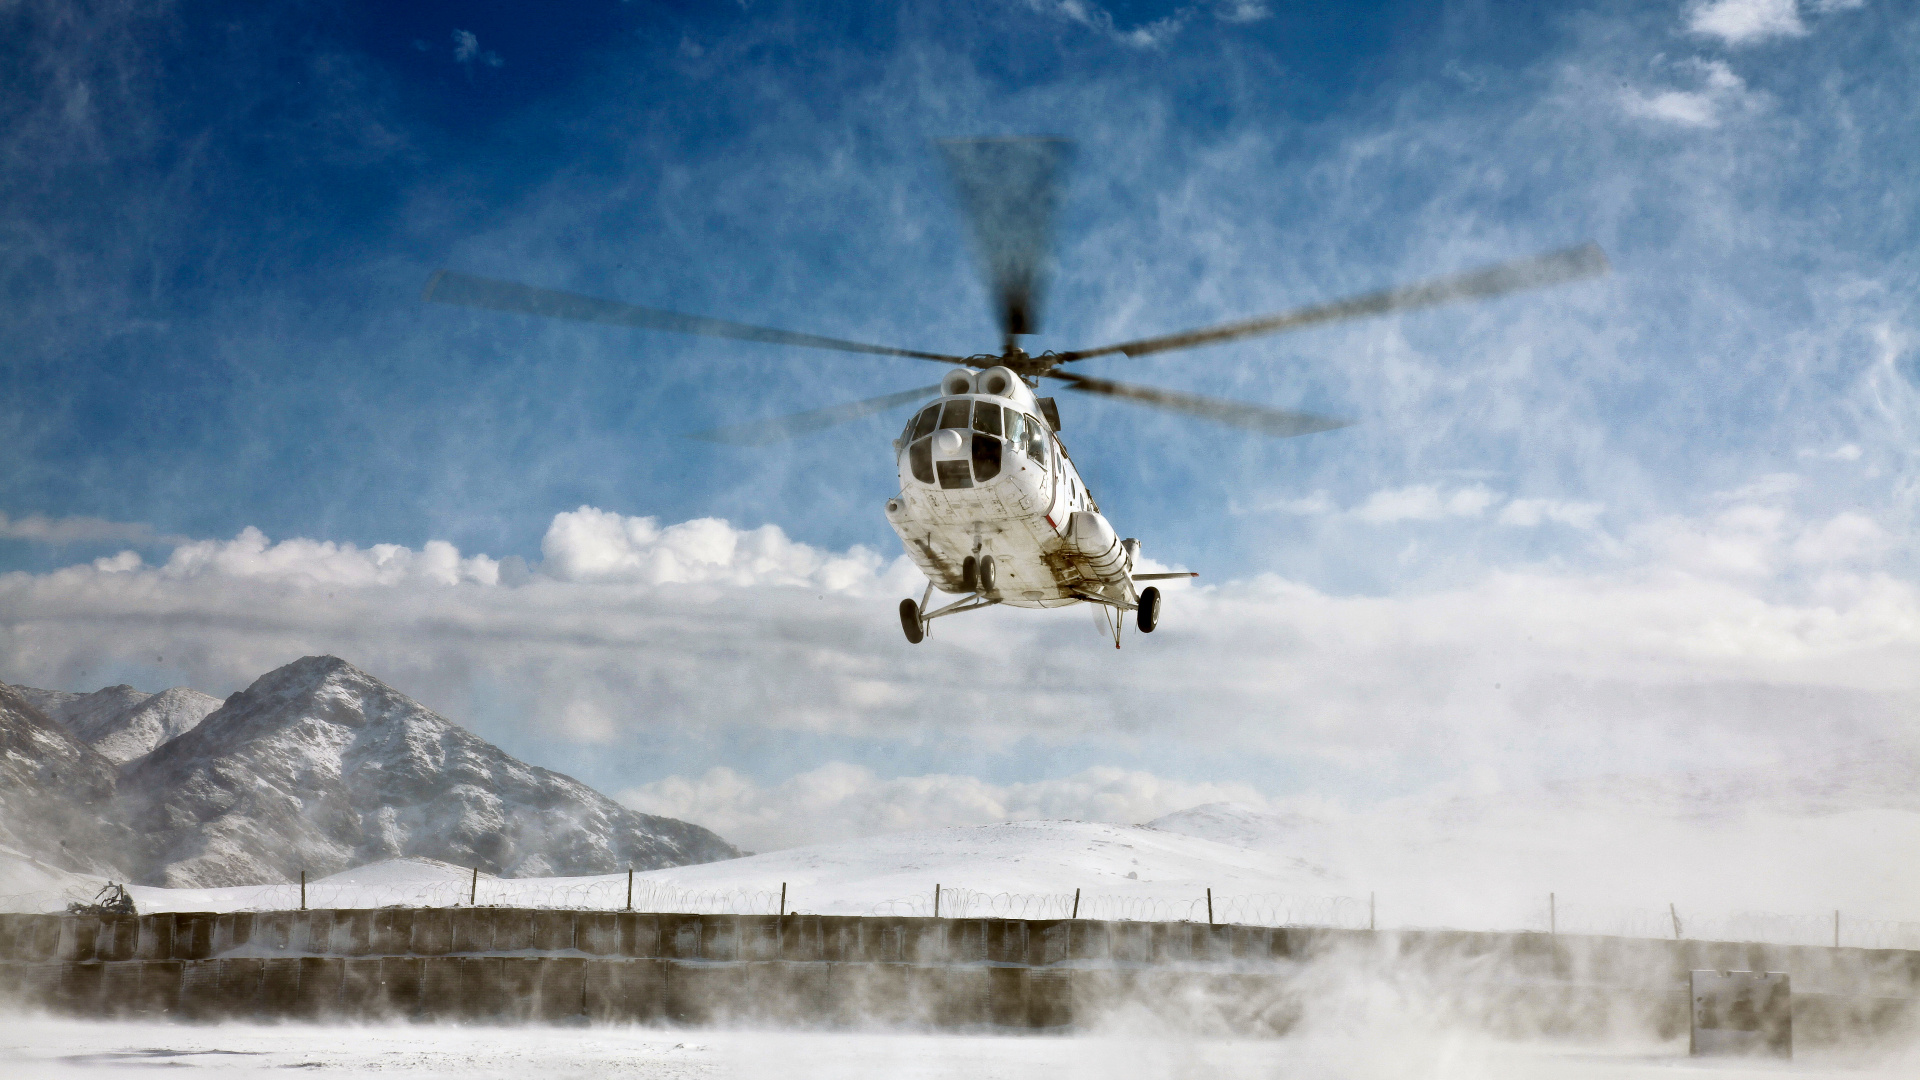 直升机, 旋翼飞机, 直升机转子的, 军用直升机, 航空 壁纸 1920x1080 允许